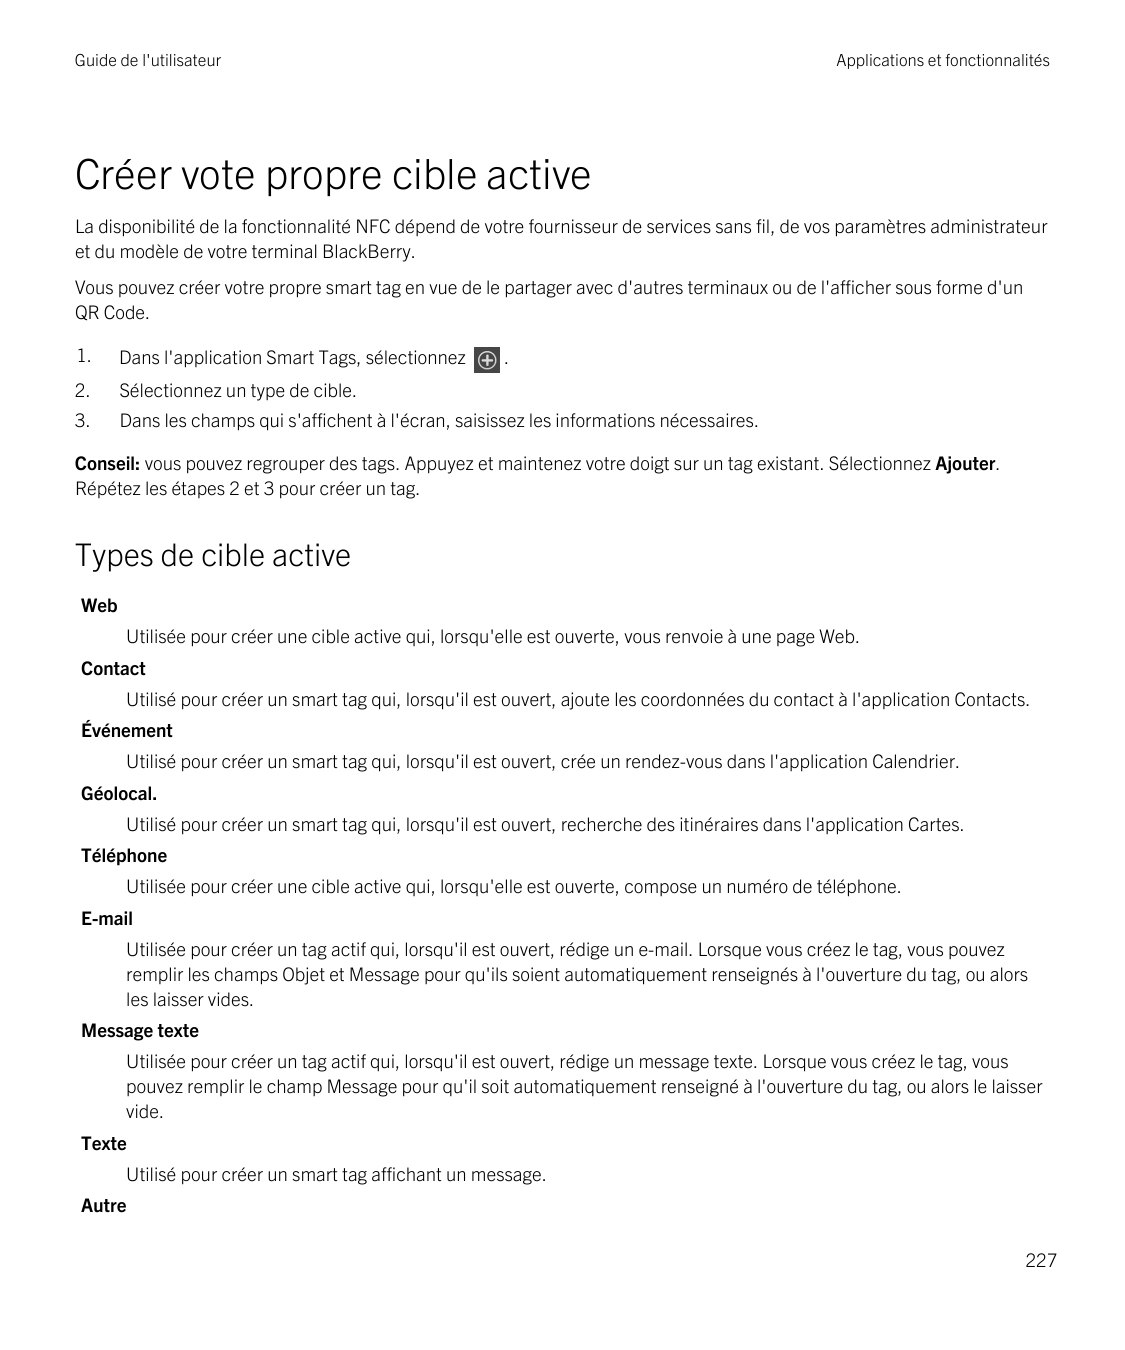 Guide de l'utilisateurApplications et fonctionnalitésCréer vote propre cible activeLa disponibilité de la fonctionnalité NFC dép